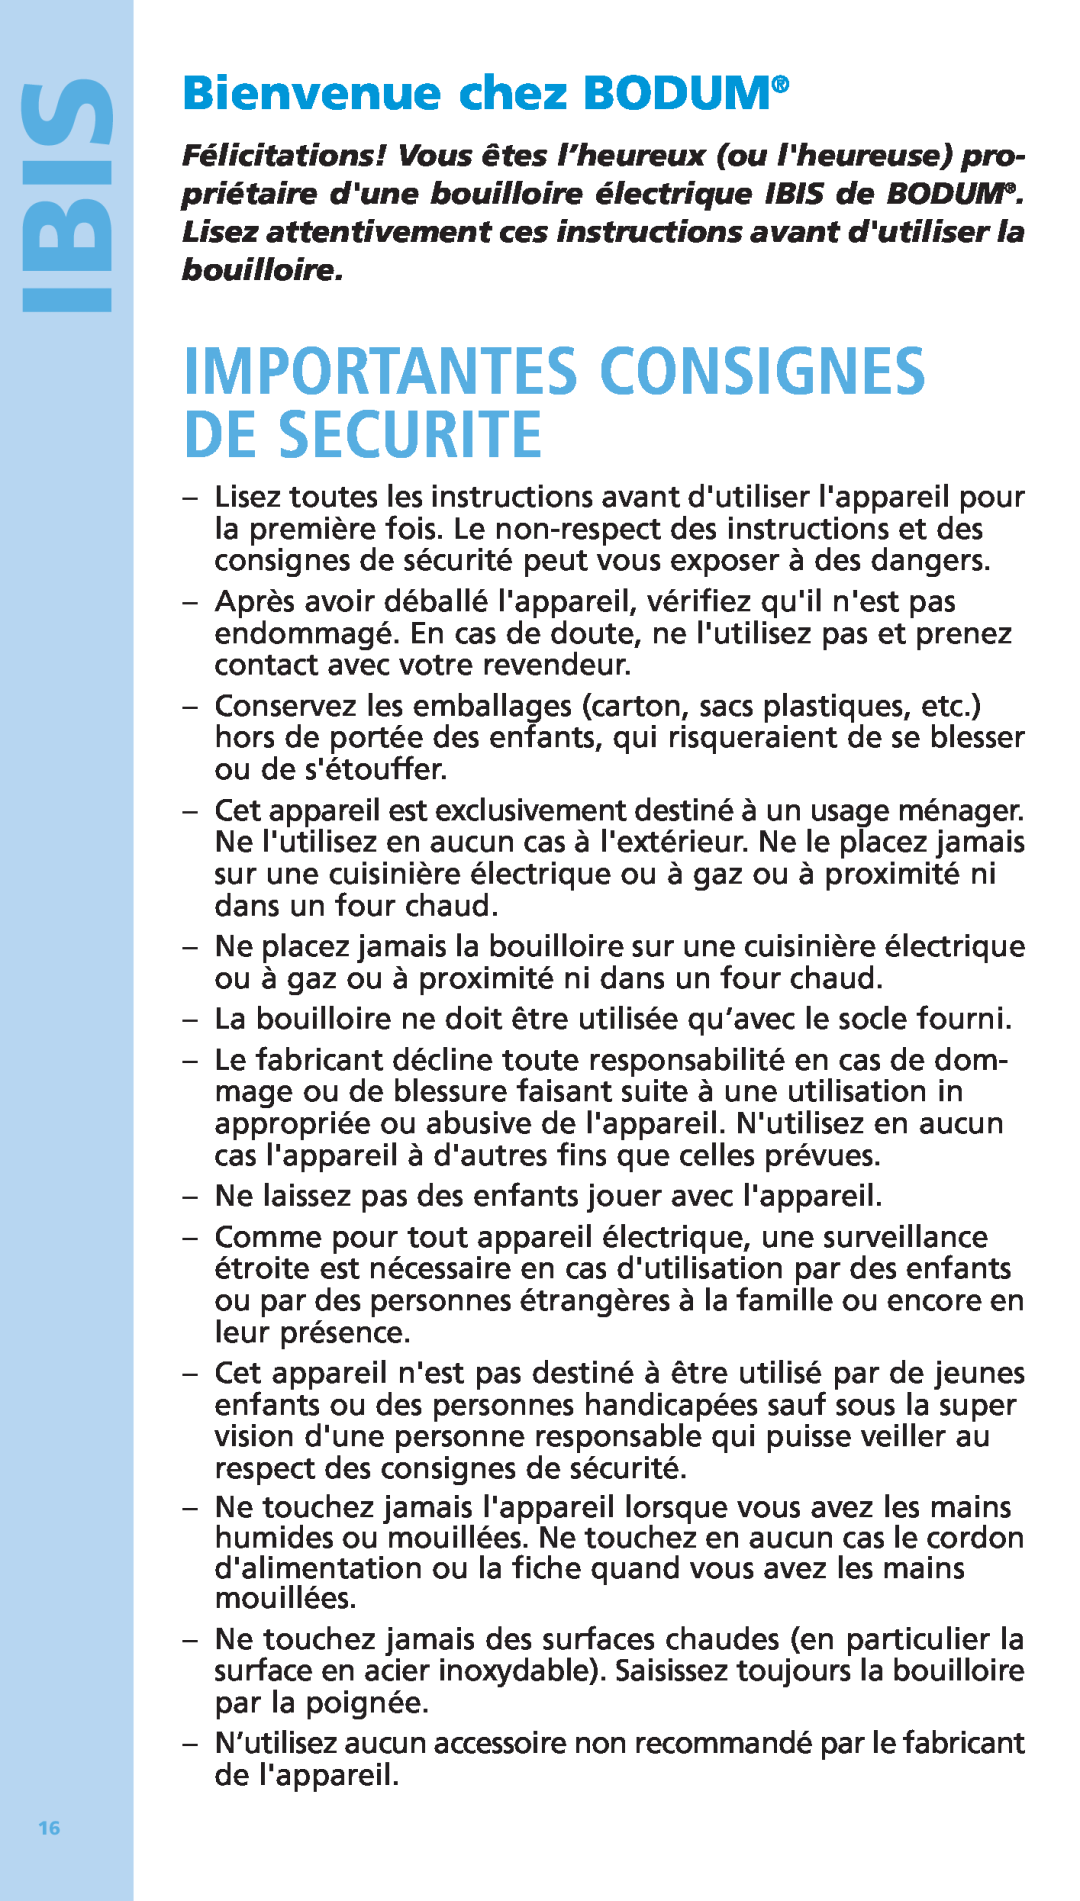 Bodum 5500-16 manual Importantes Consignes De Securite, Bienvenue chez BODUM, Ibis 